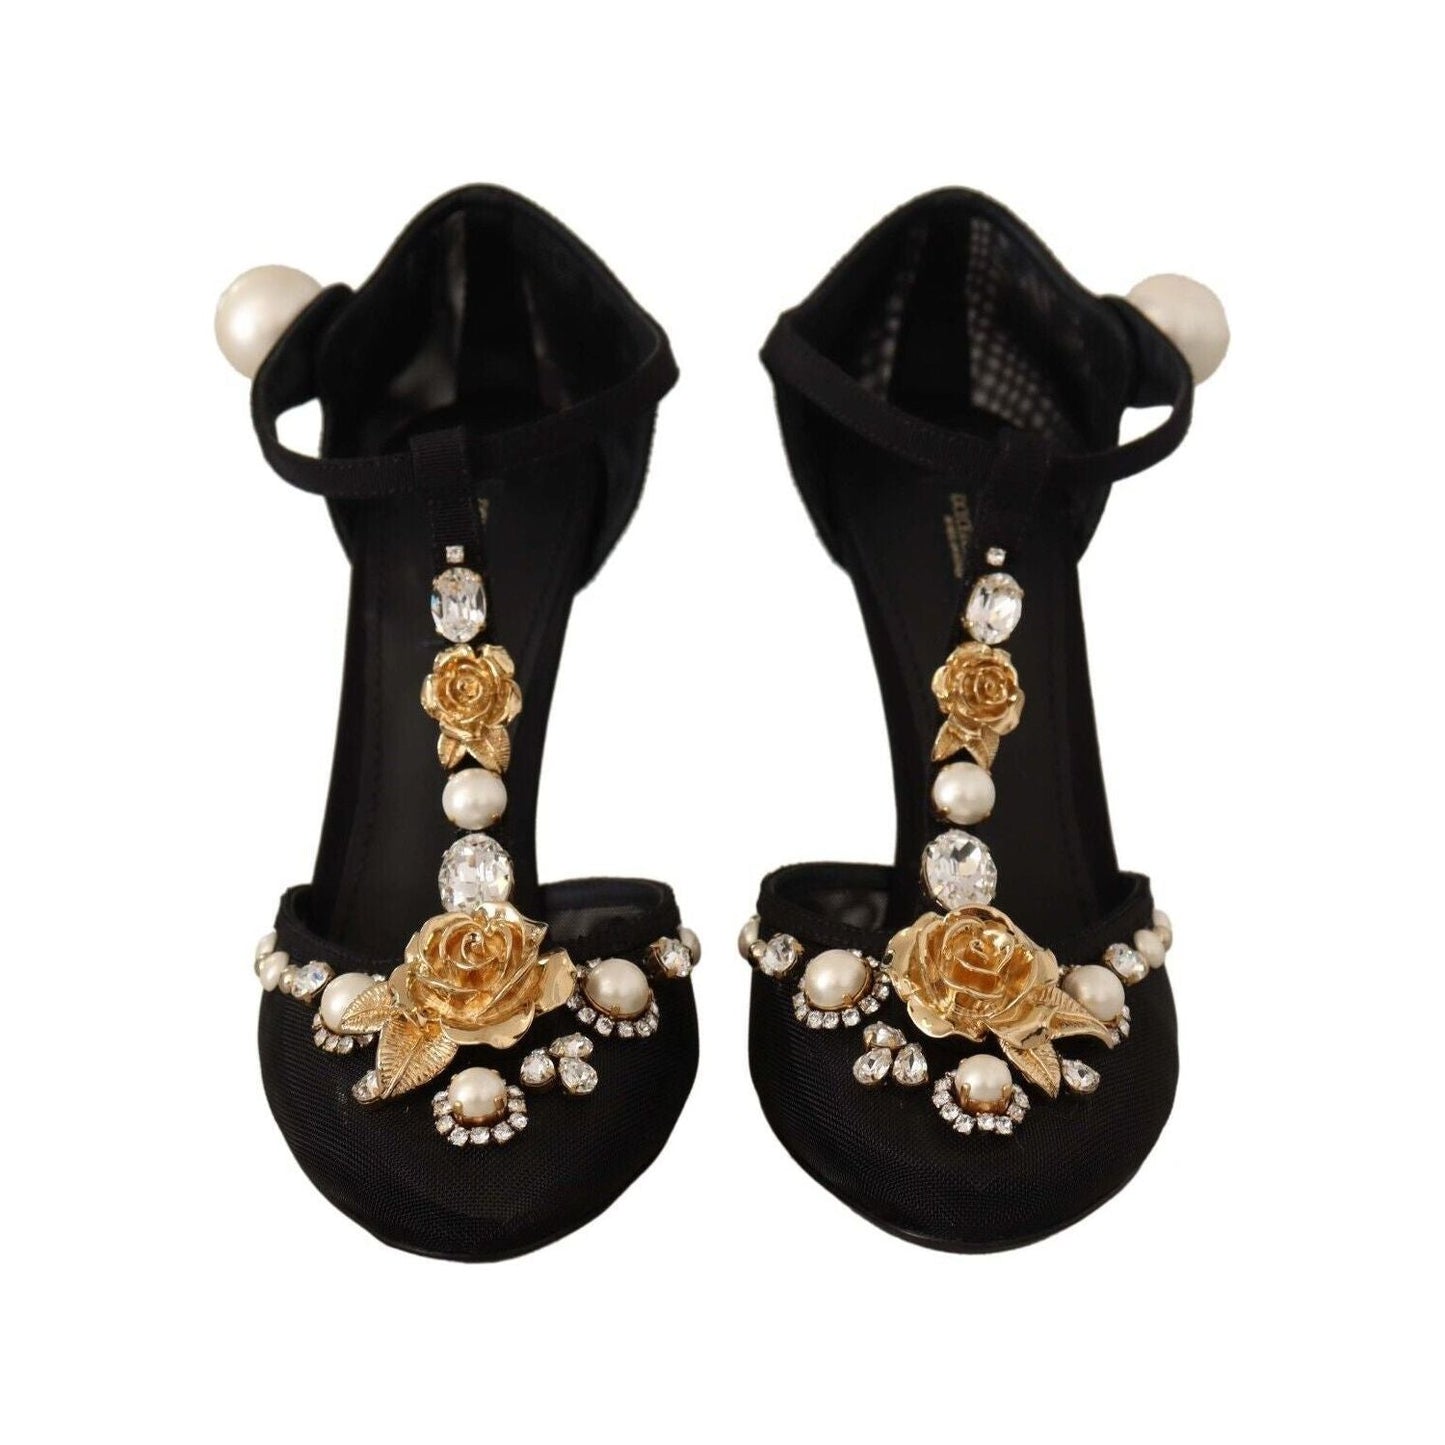 Dolce & Gabbana Elegant Embellished T-Strap Heels Sandals black-faux-pearl-crystal-vally-heels-sandals-shoes